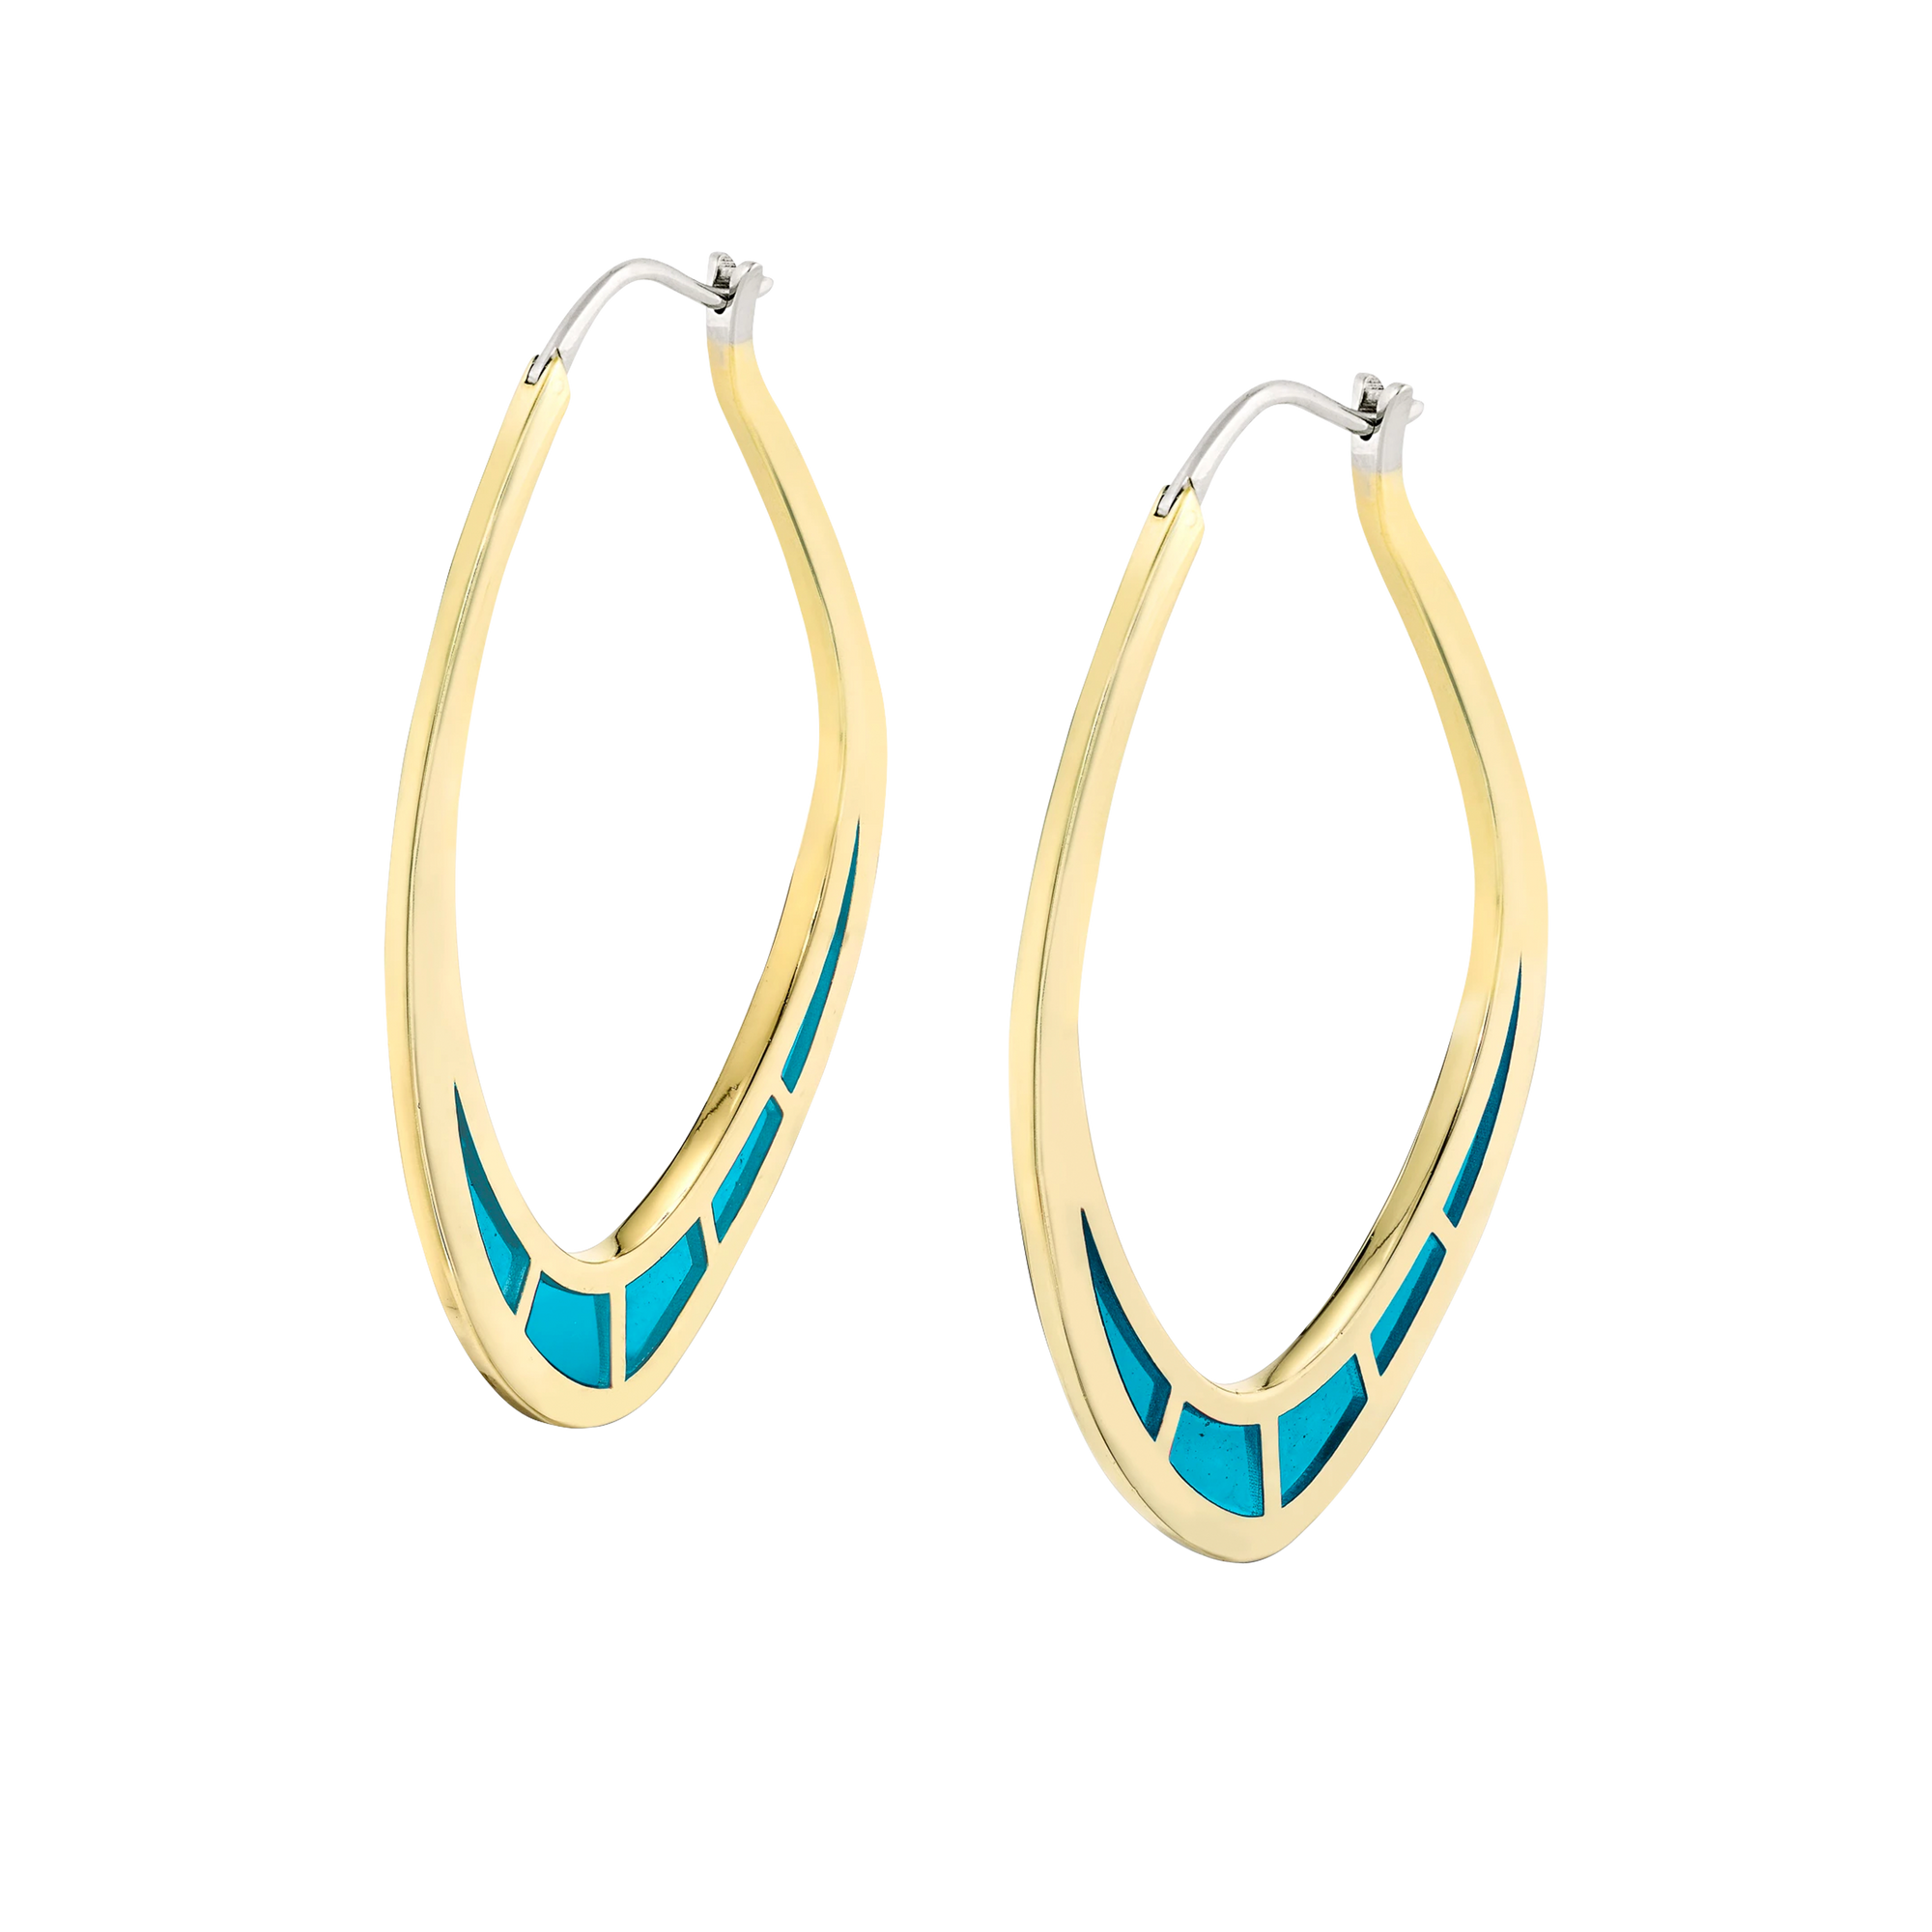 Cica Earrings with Light Blue Enamel